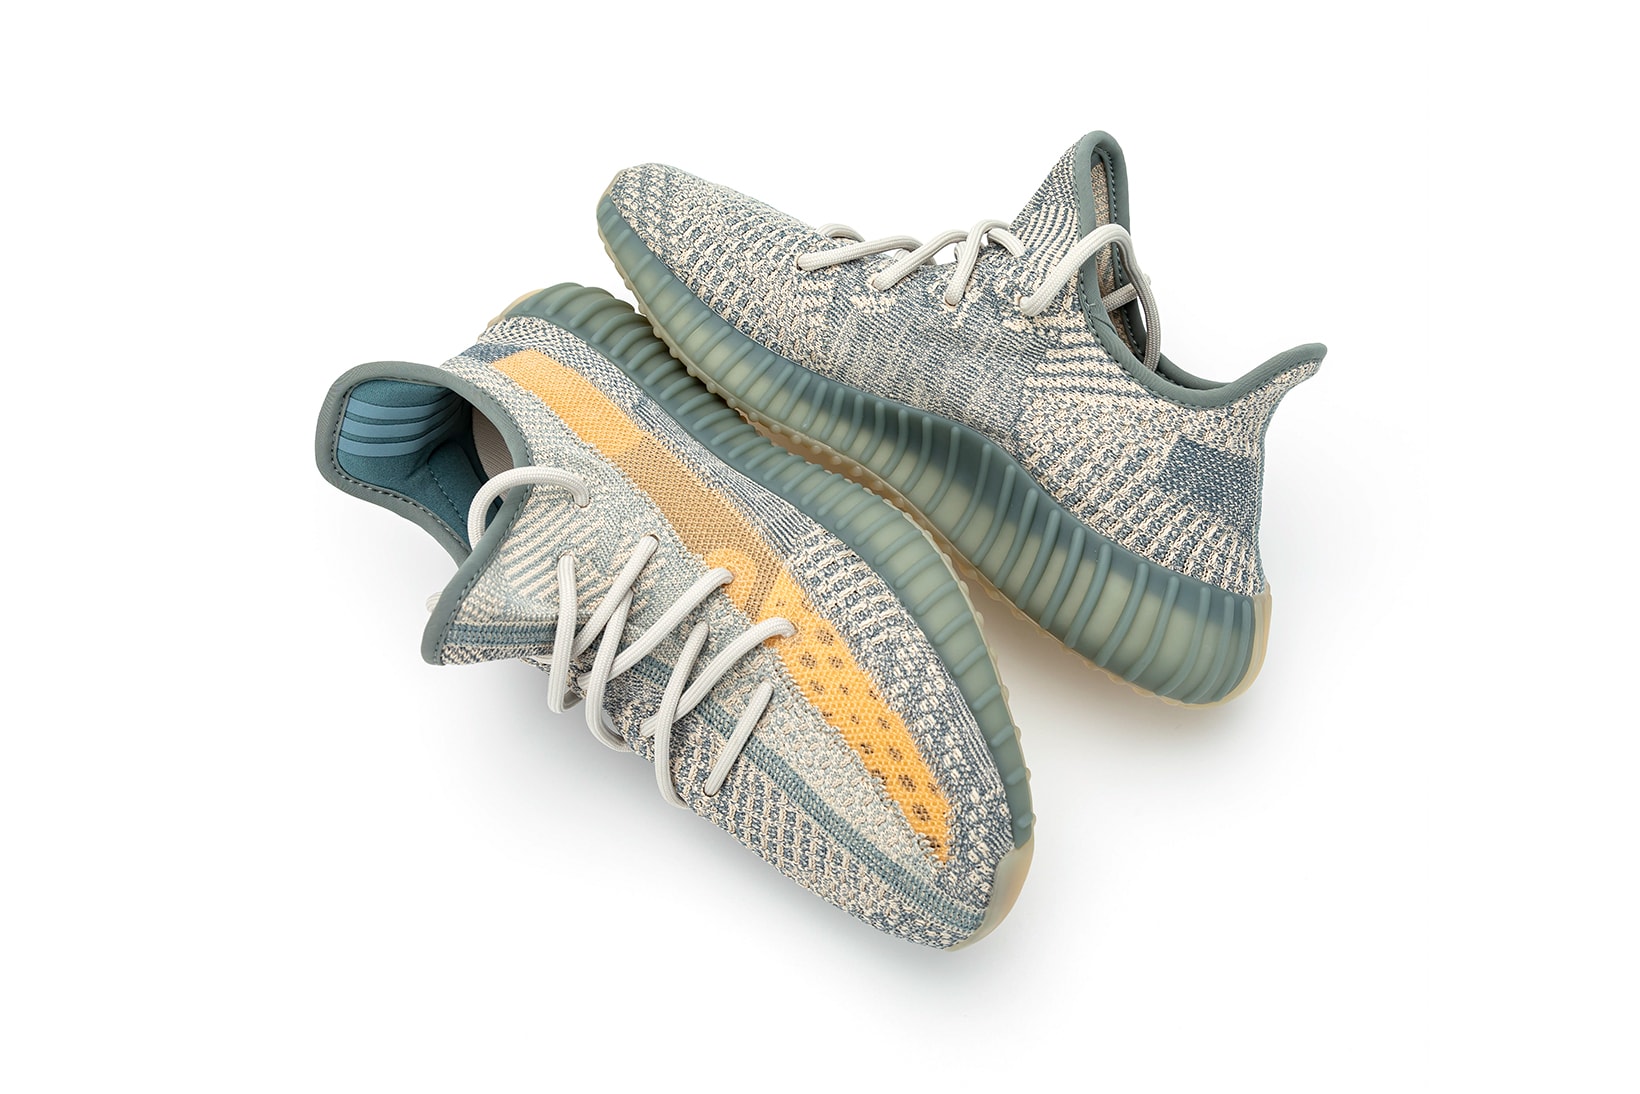 adidas kanye west yeezy boost 350 v2 israfil sneakers blue green gray orange colorway shoes sneakerhead footwear